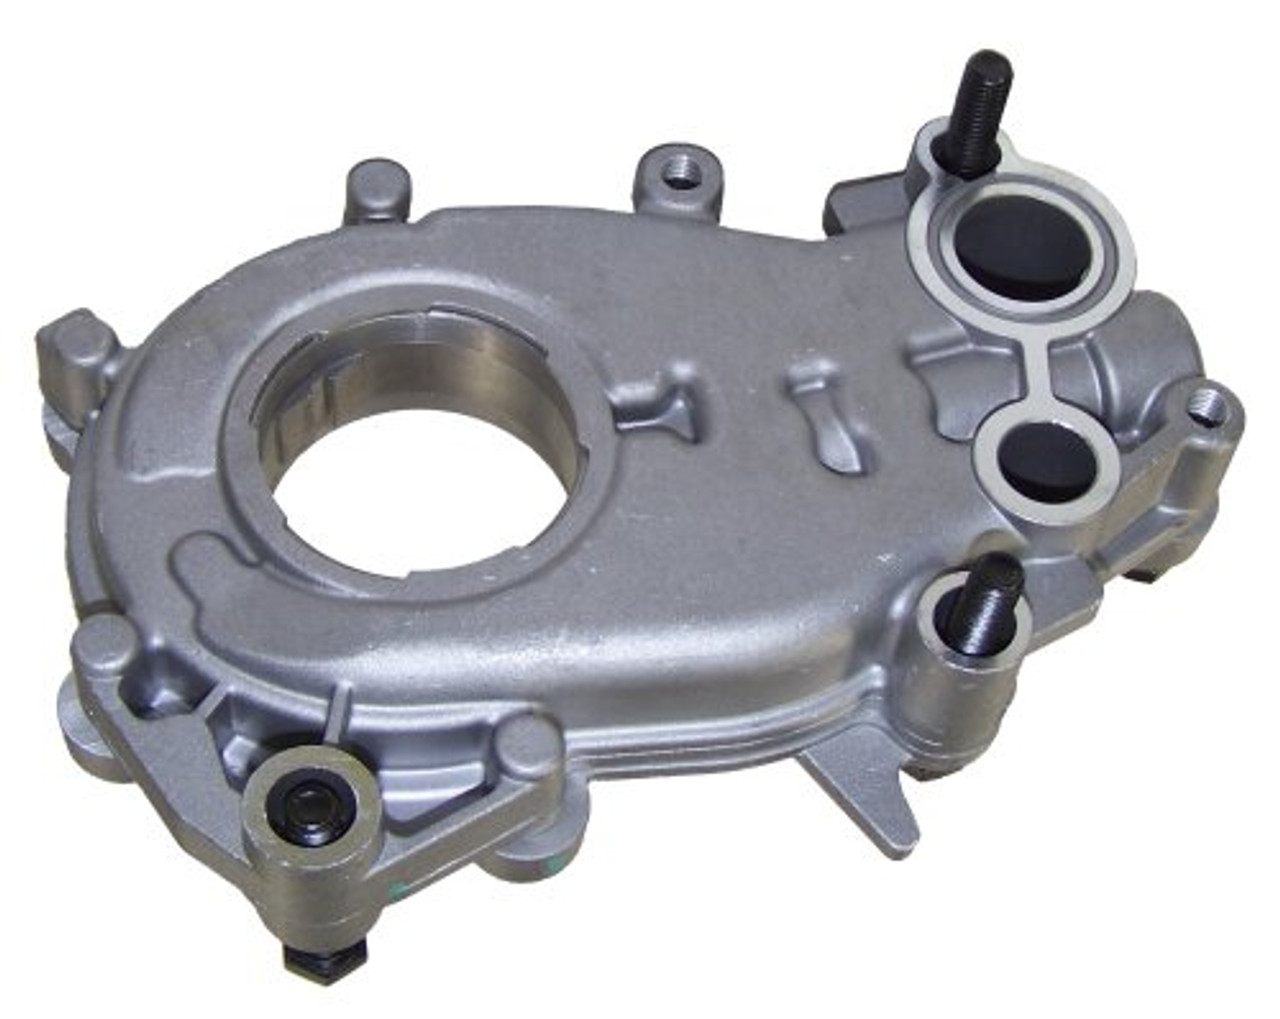 Oil Pump - 2014 Cadillac XTS 3.6L Engine Parts # OP3139ZE73